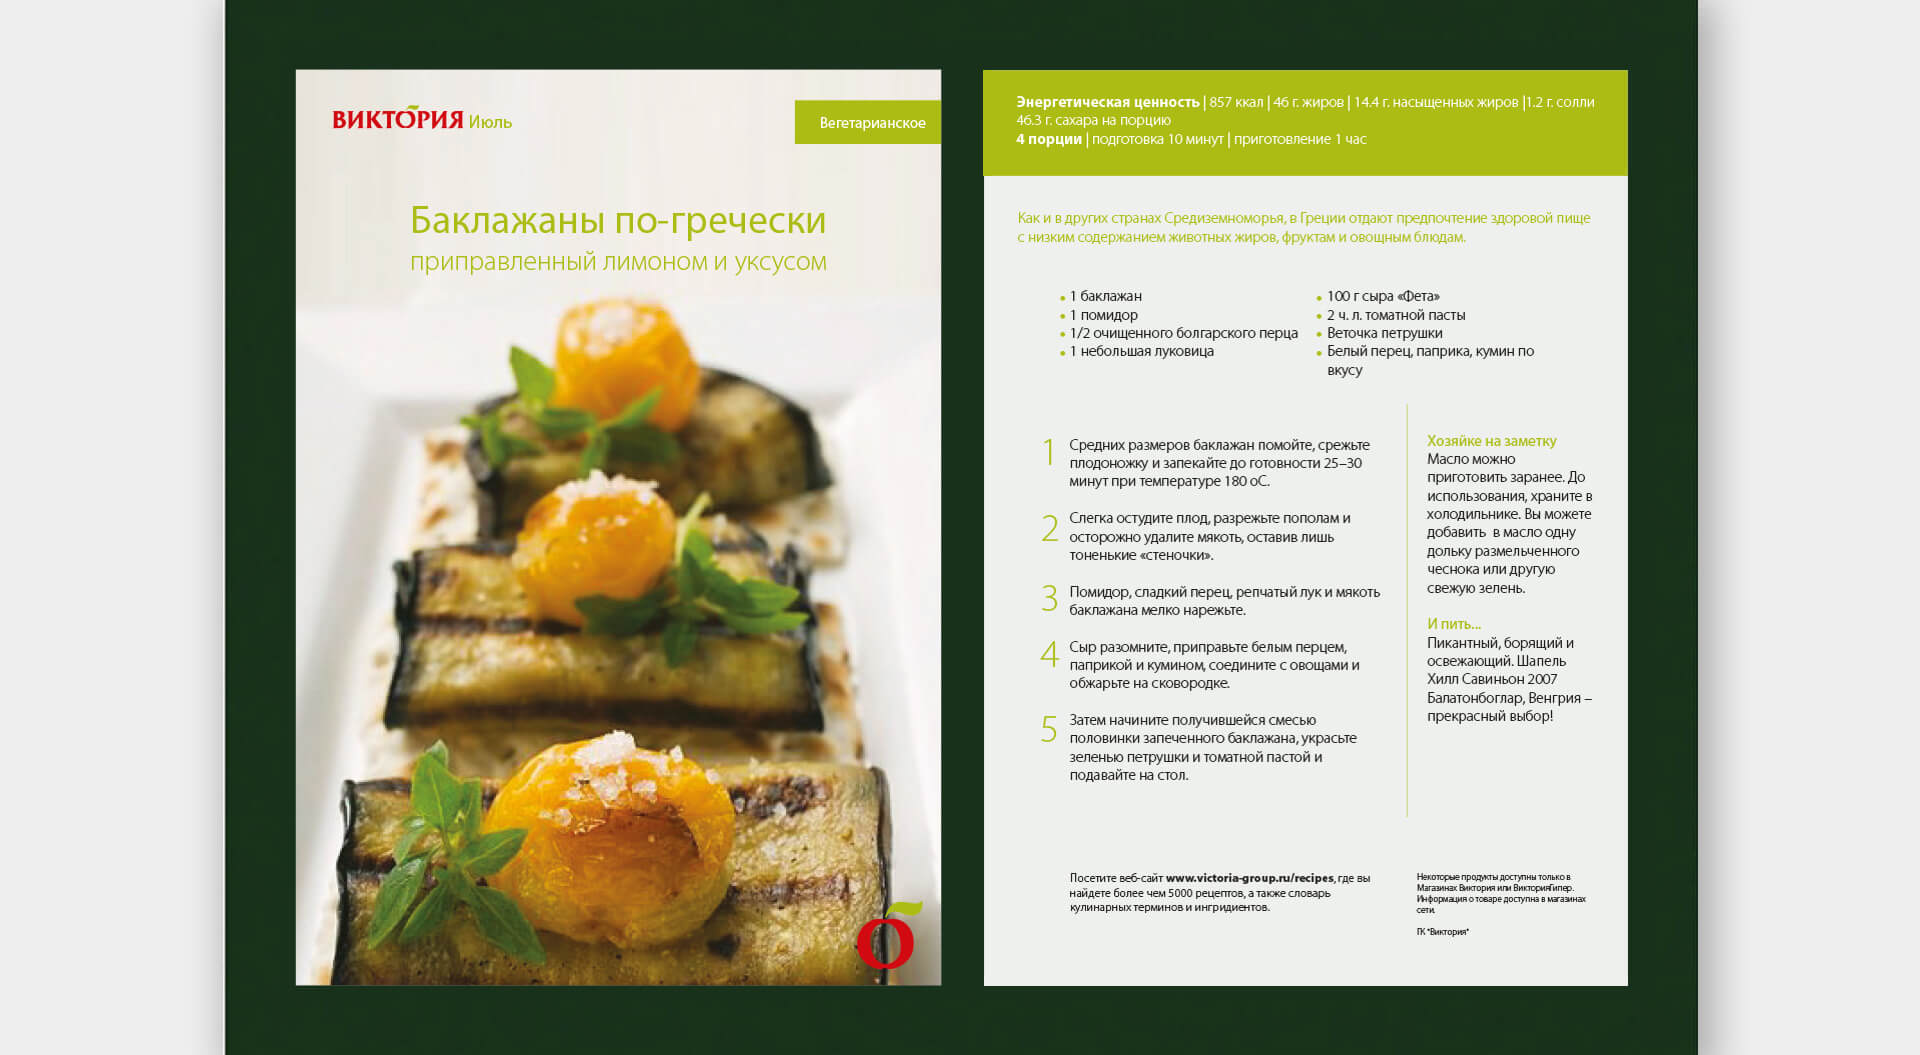 Victoria supermarkets Russia store recipe catalogue design